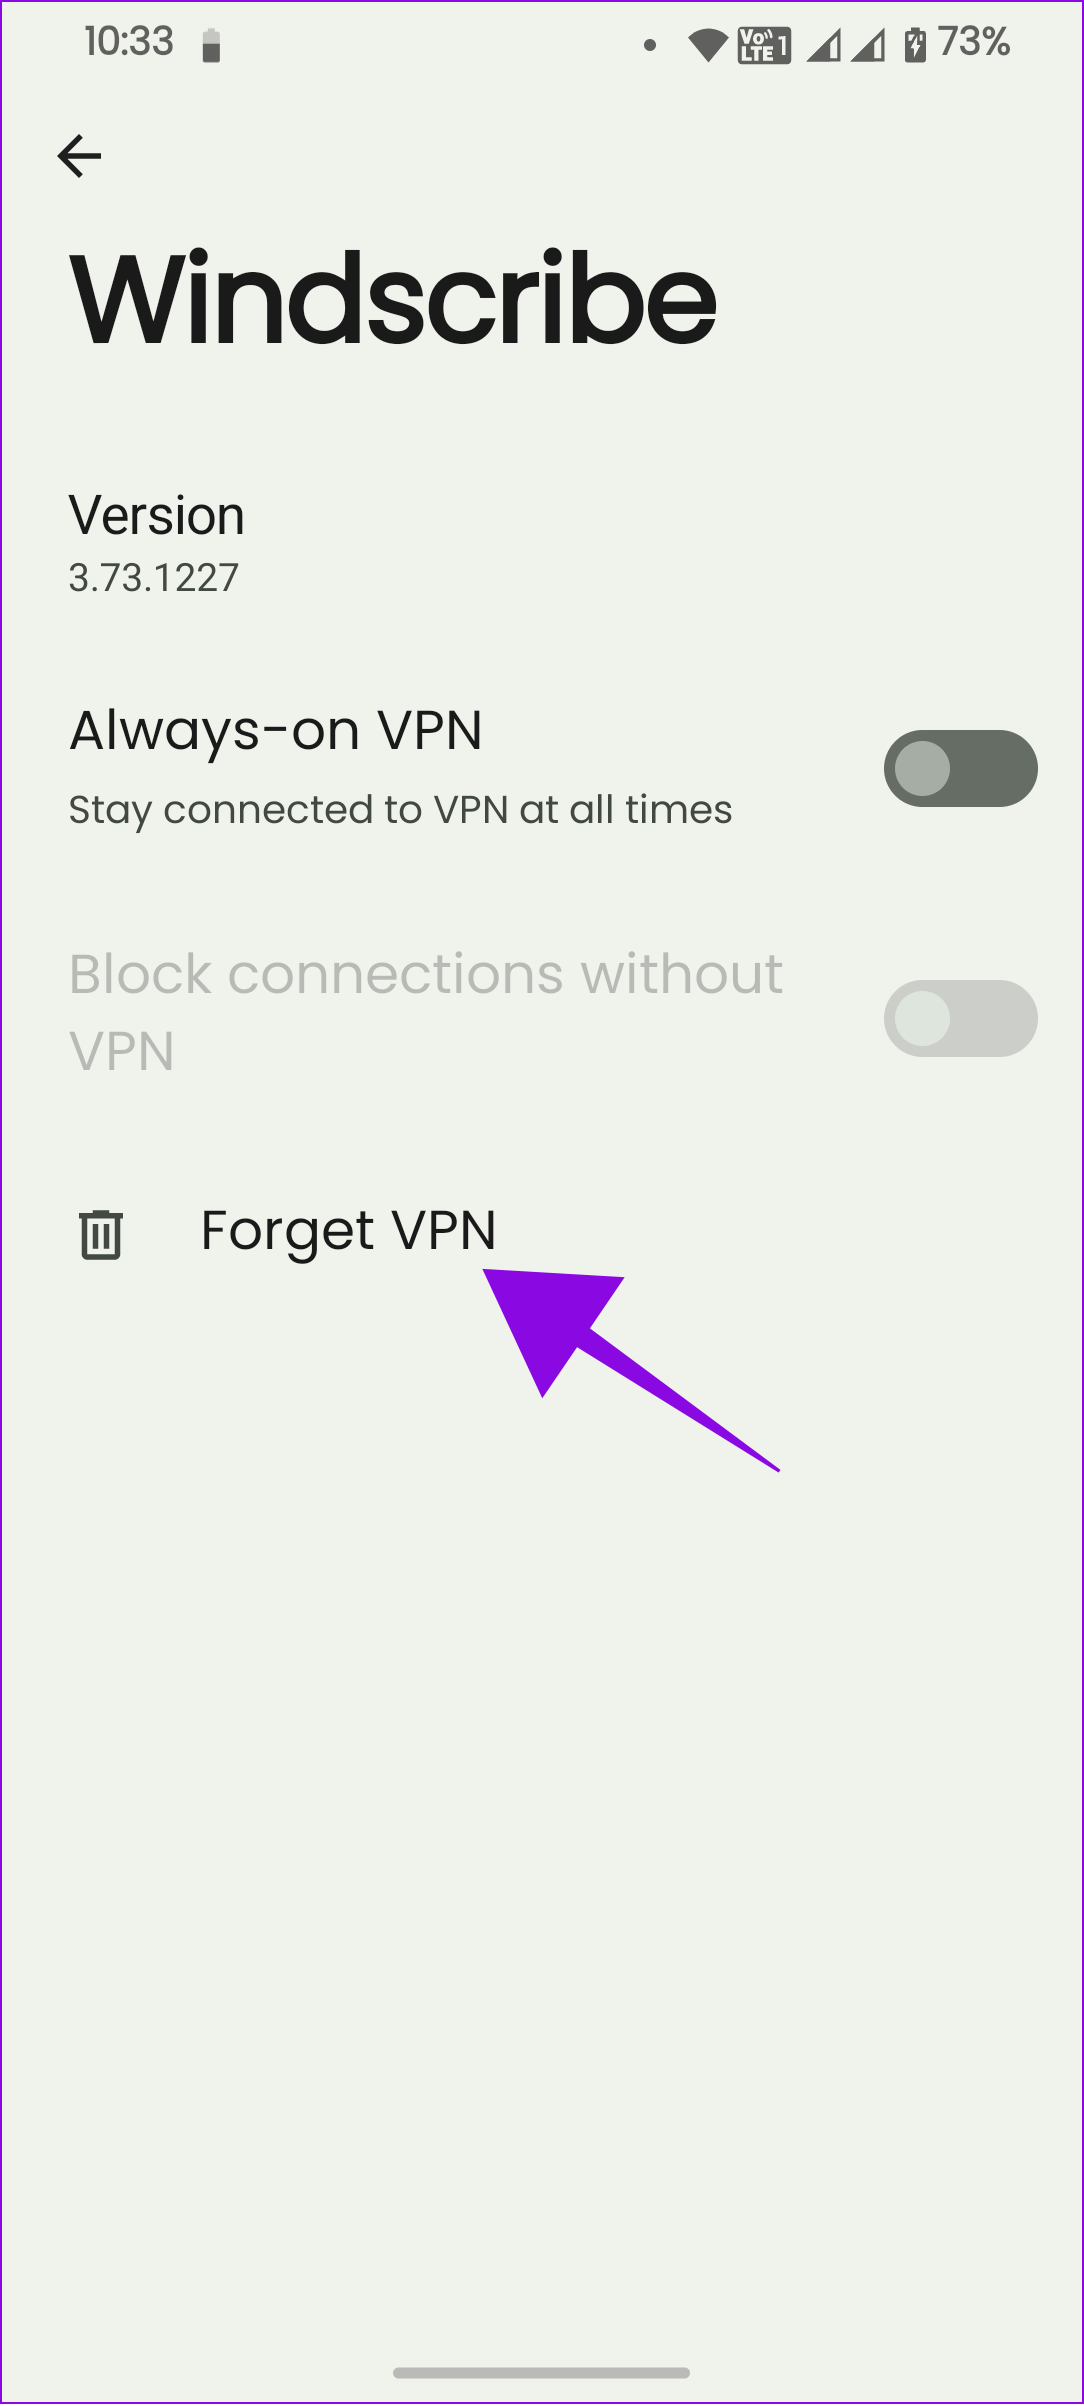 choose forget VPN